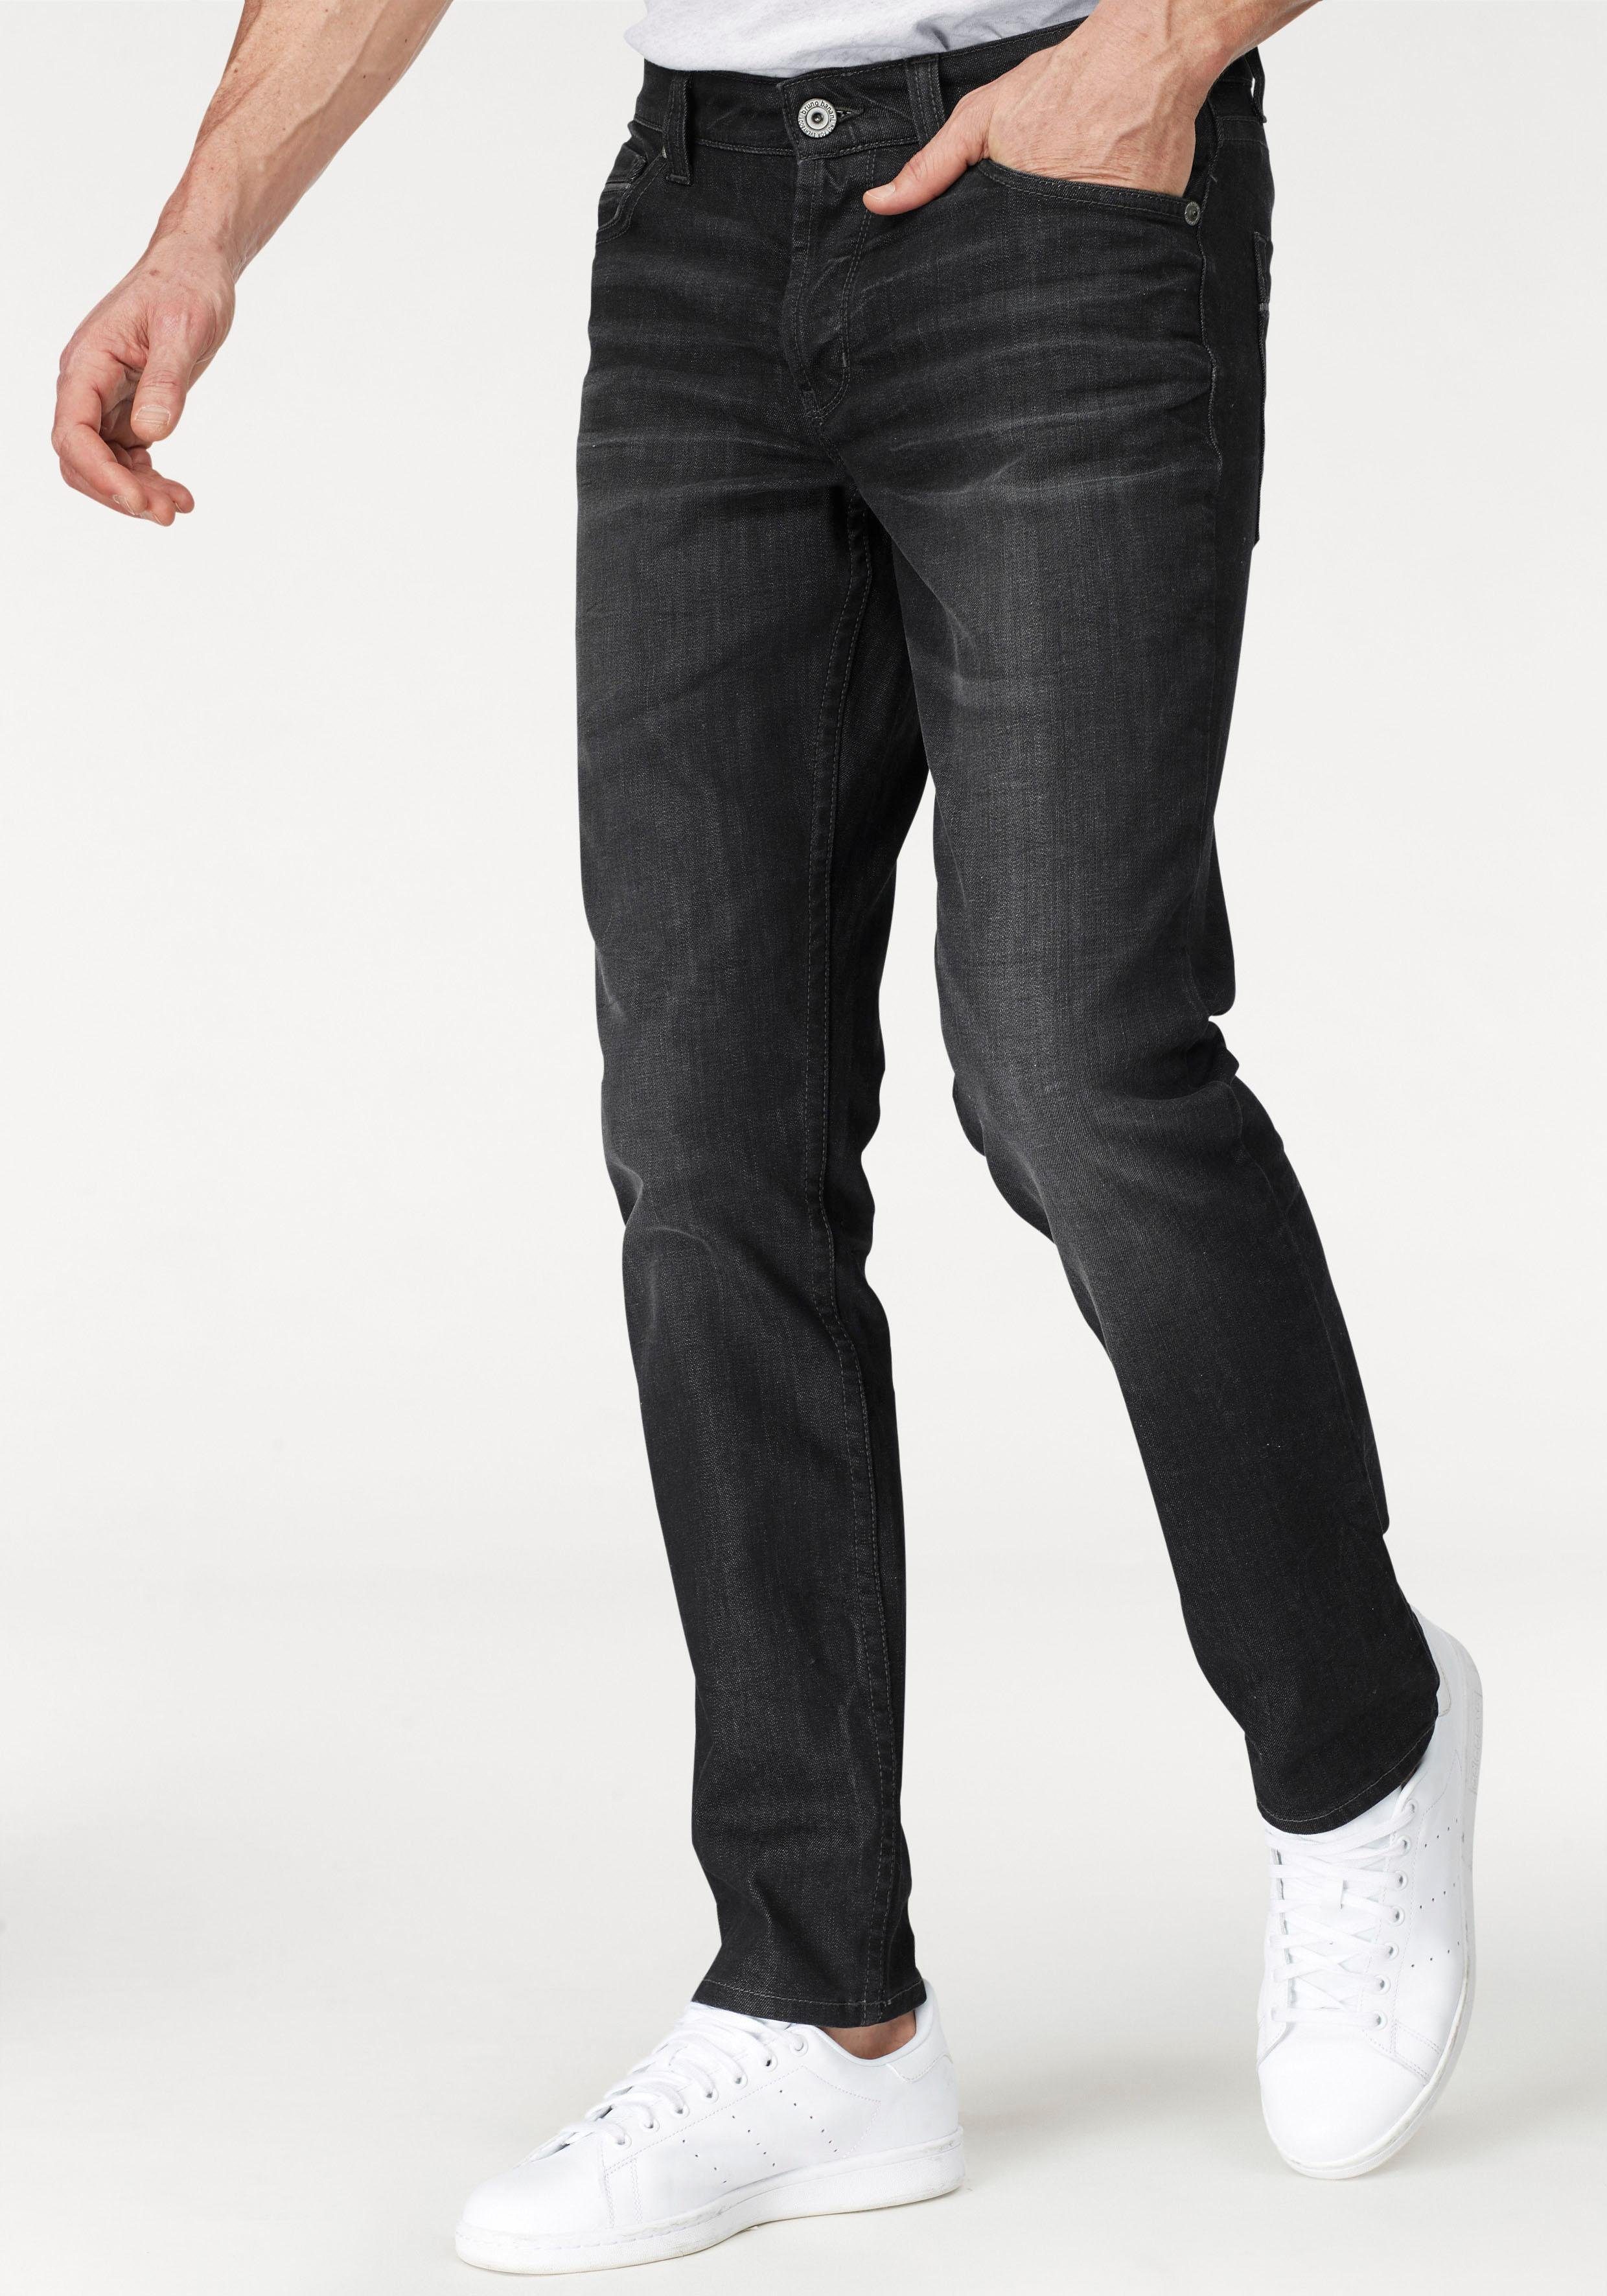 Herren Jeans in schwarz online kaufen | OTTO